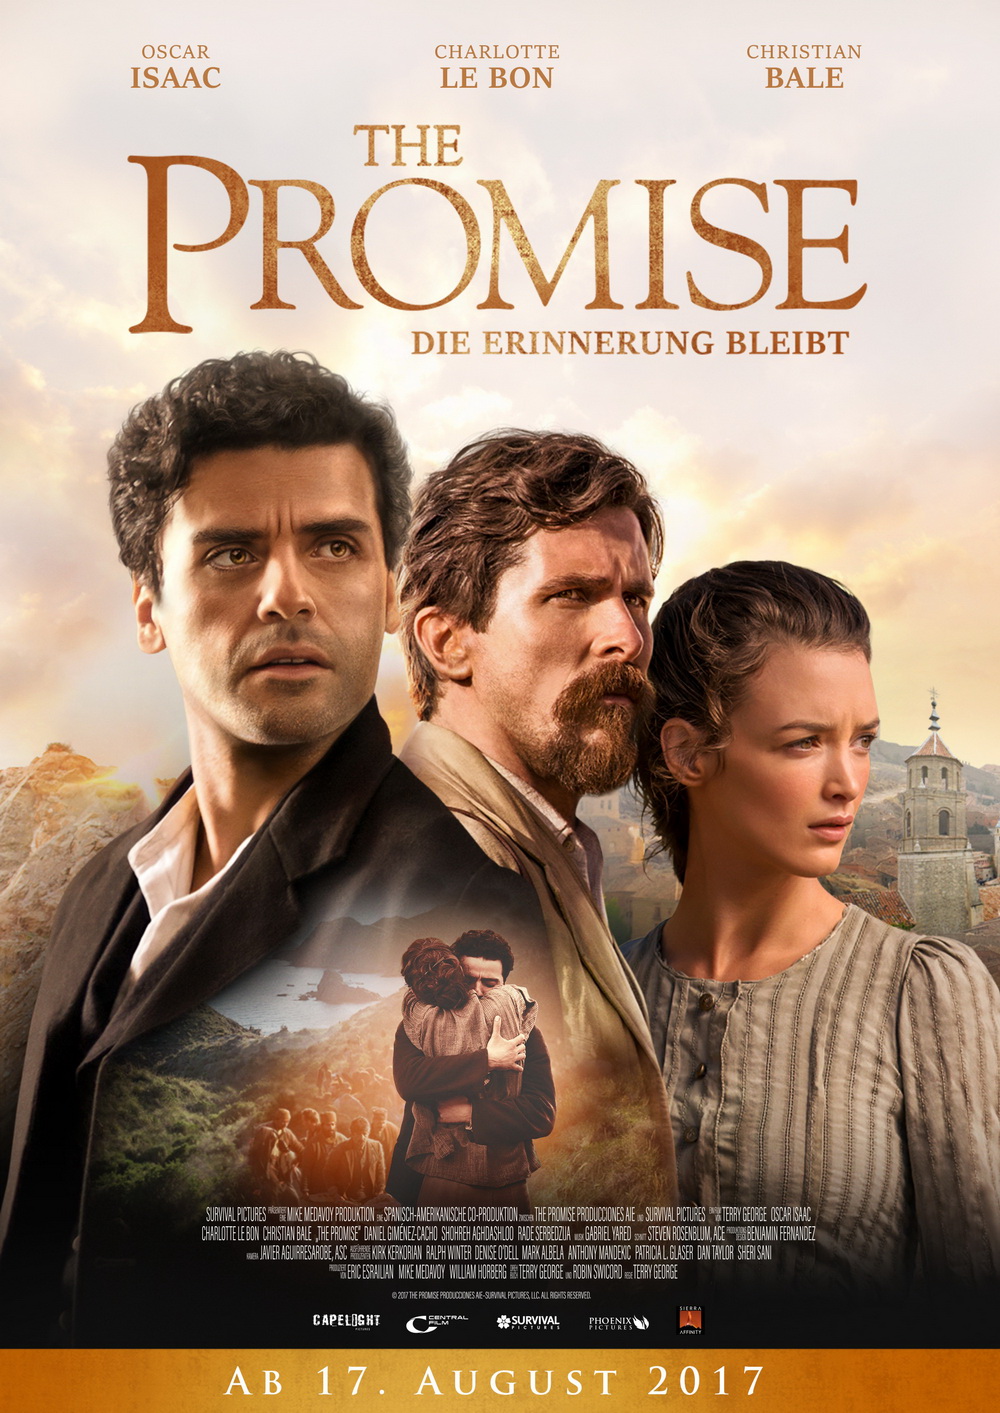 [承诺/诺言]【Diy 简繁特效/双语特效】.The.Promise.2016.BluRay.1080p.AVC.DTS-HD.MA.7.1-9011@CHDBits[43.17G]